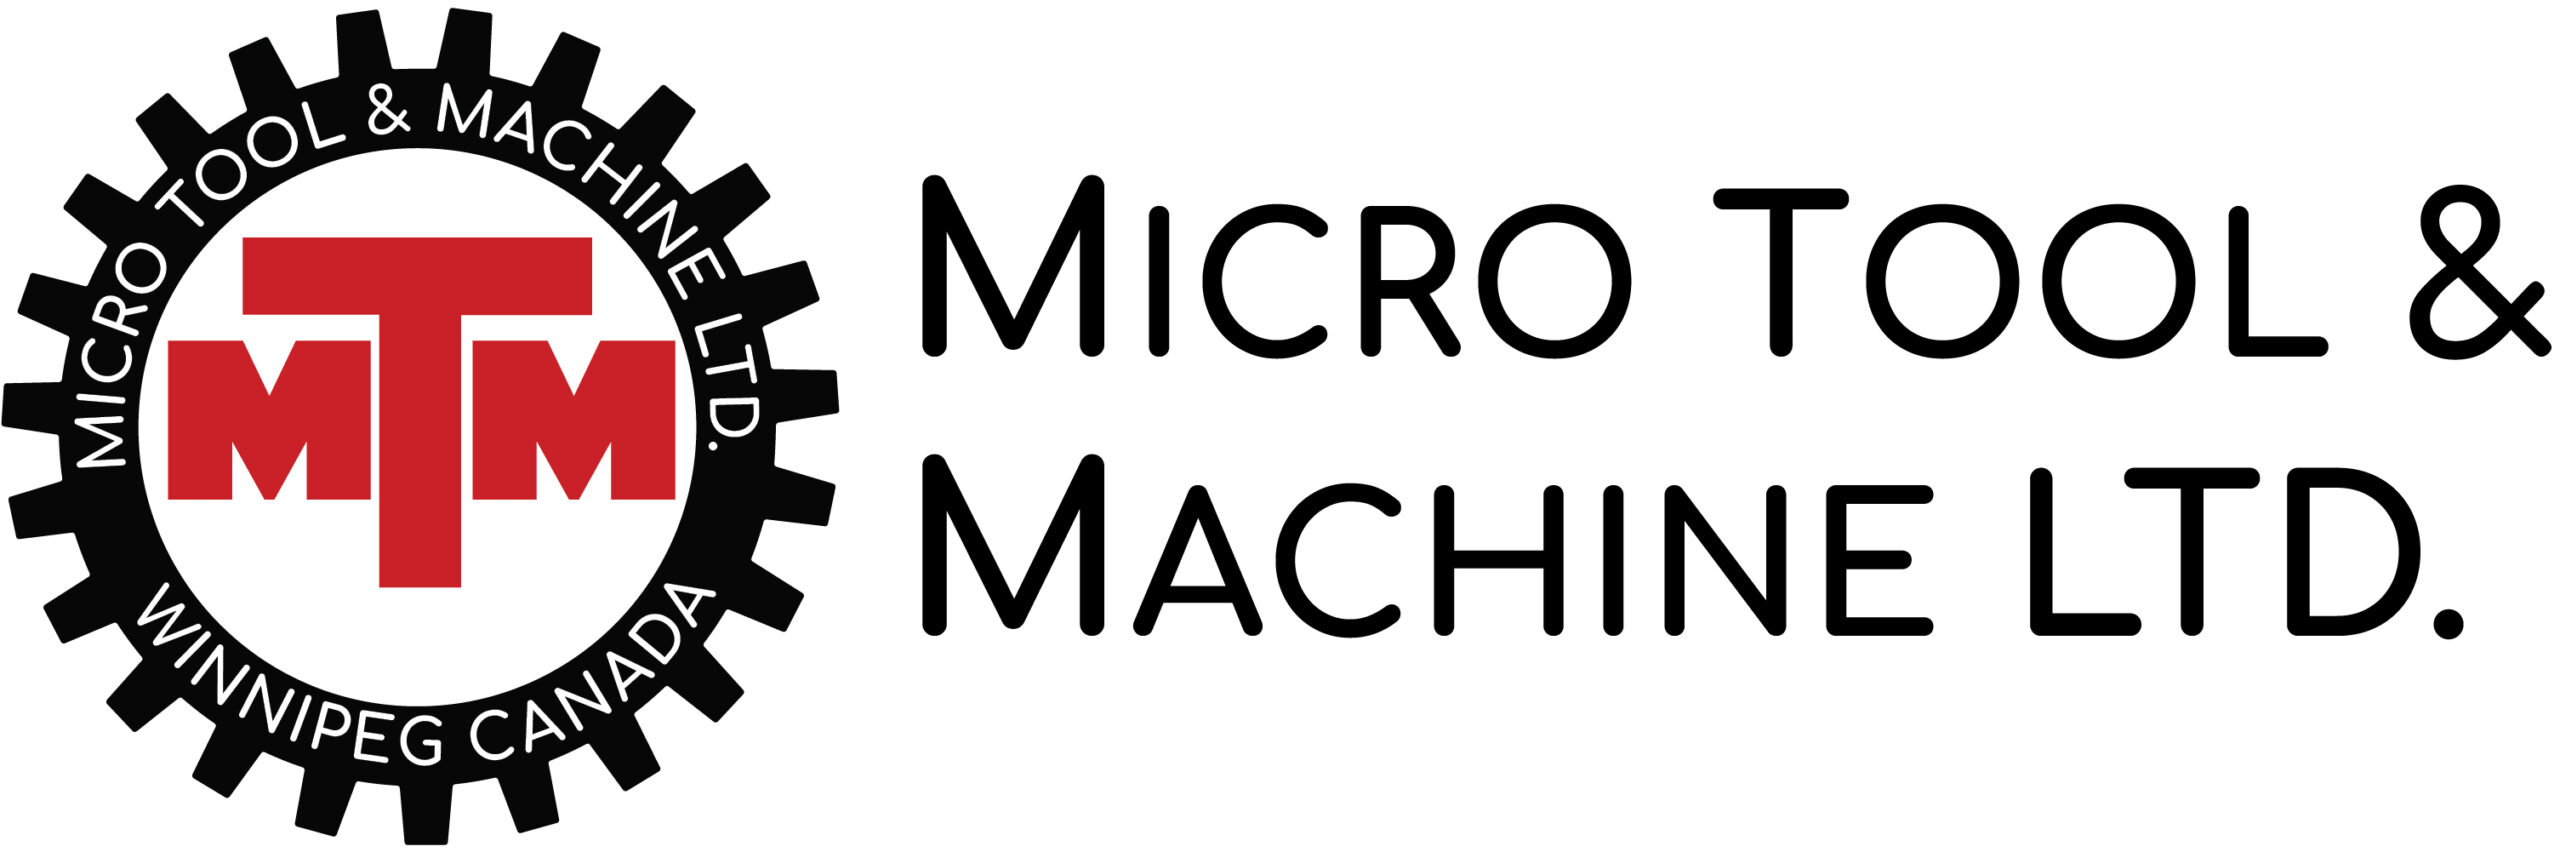 Micro Tool & Machine